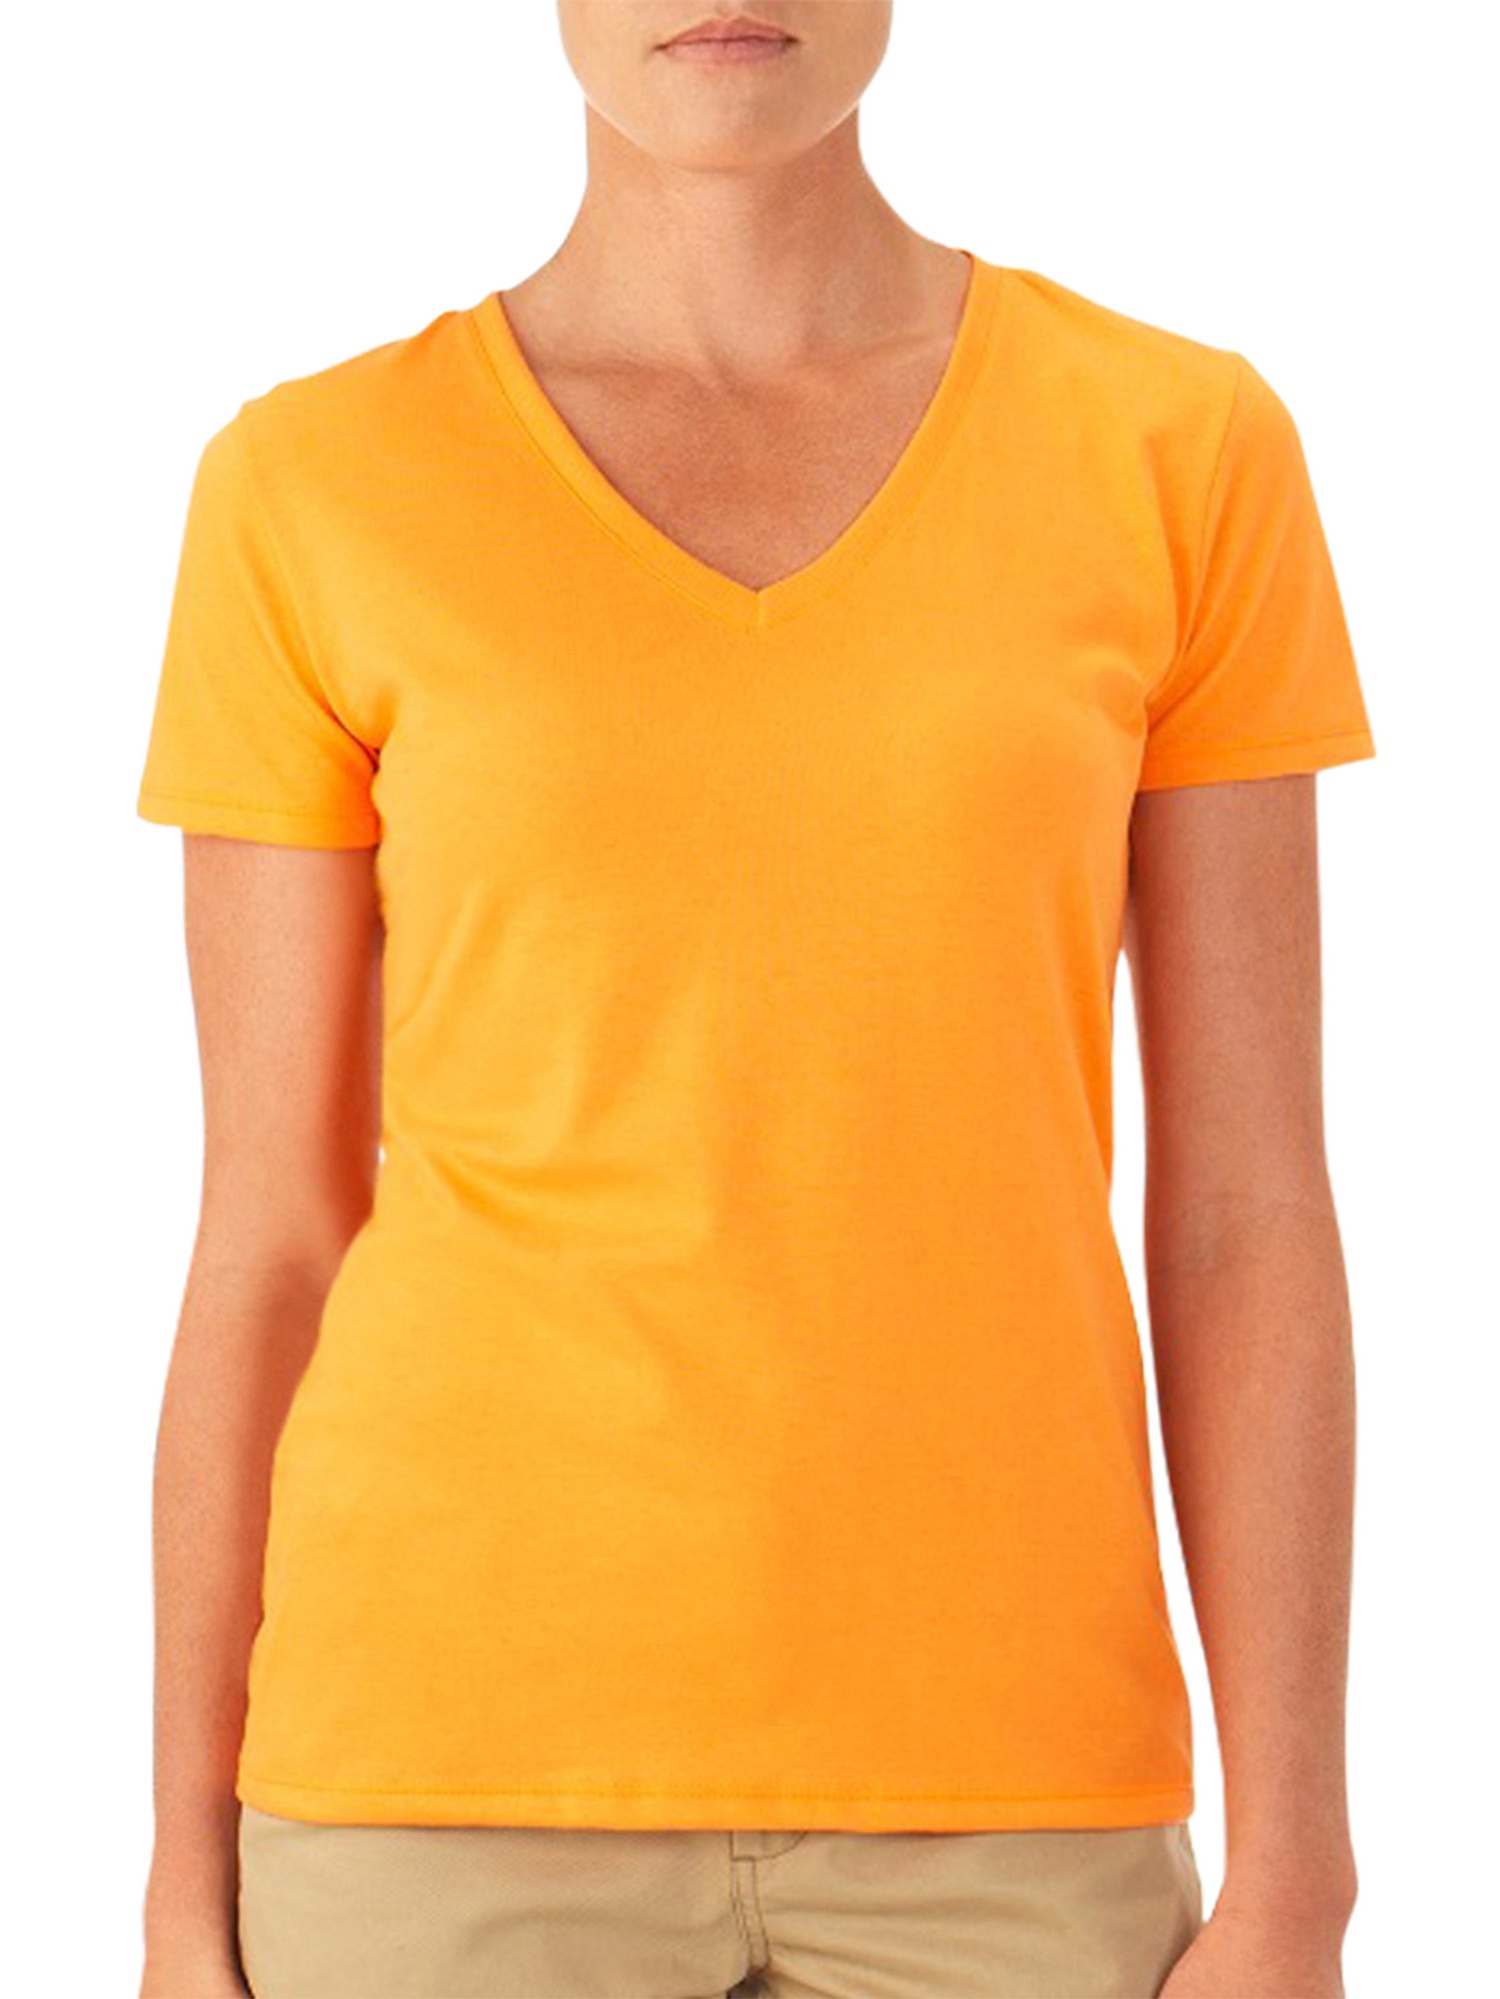 Women's Short Sleeve V-neck Tee - image 1 of 1